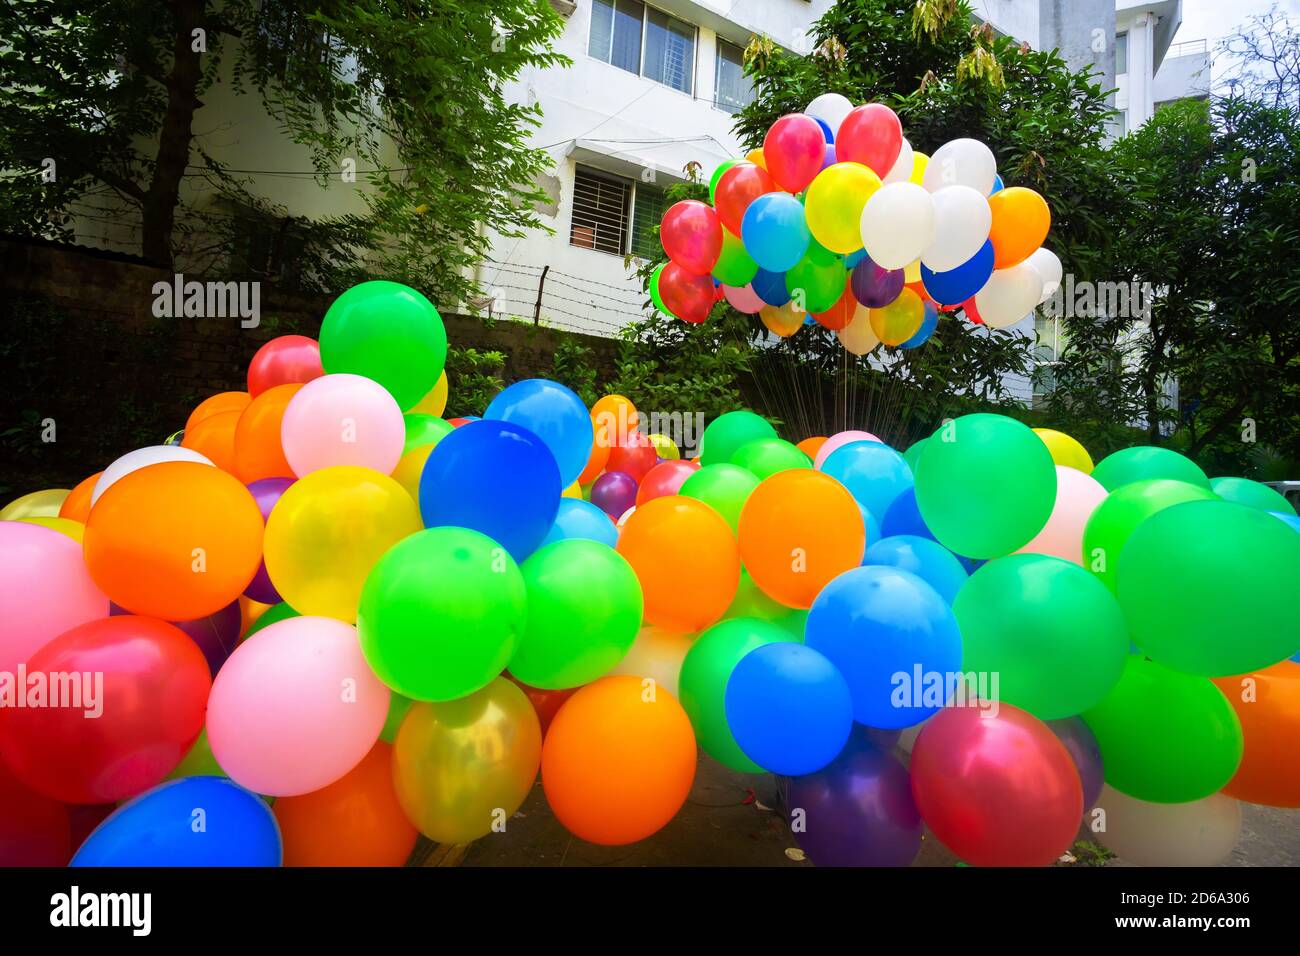 Une Pile De Longs Ballons De Modélisation Colorés Photo stock - Image du  paquet, modeler: 190599764